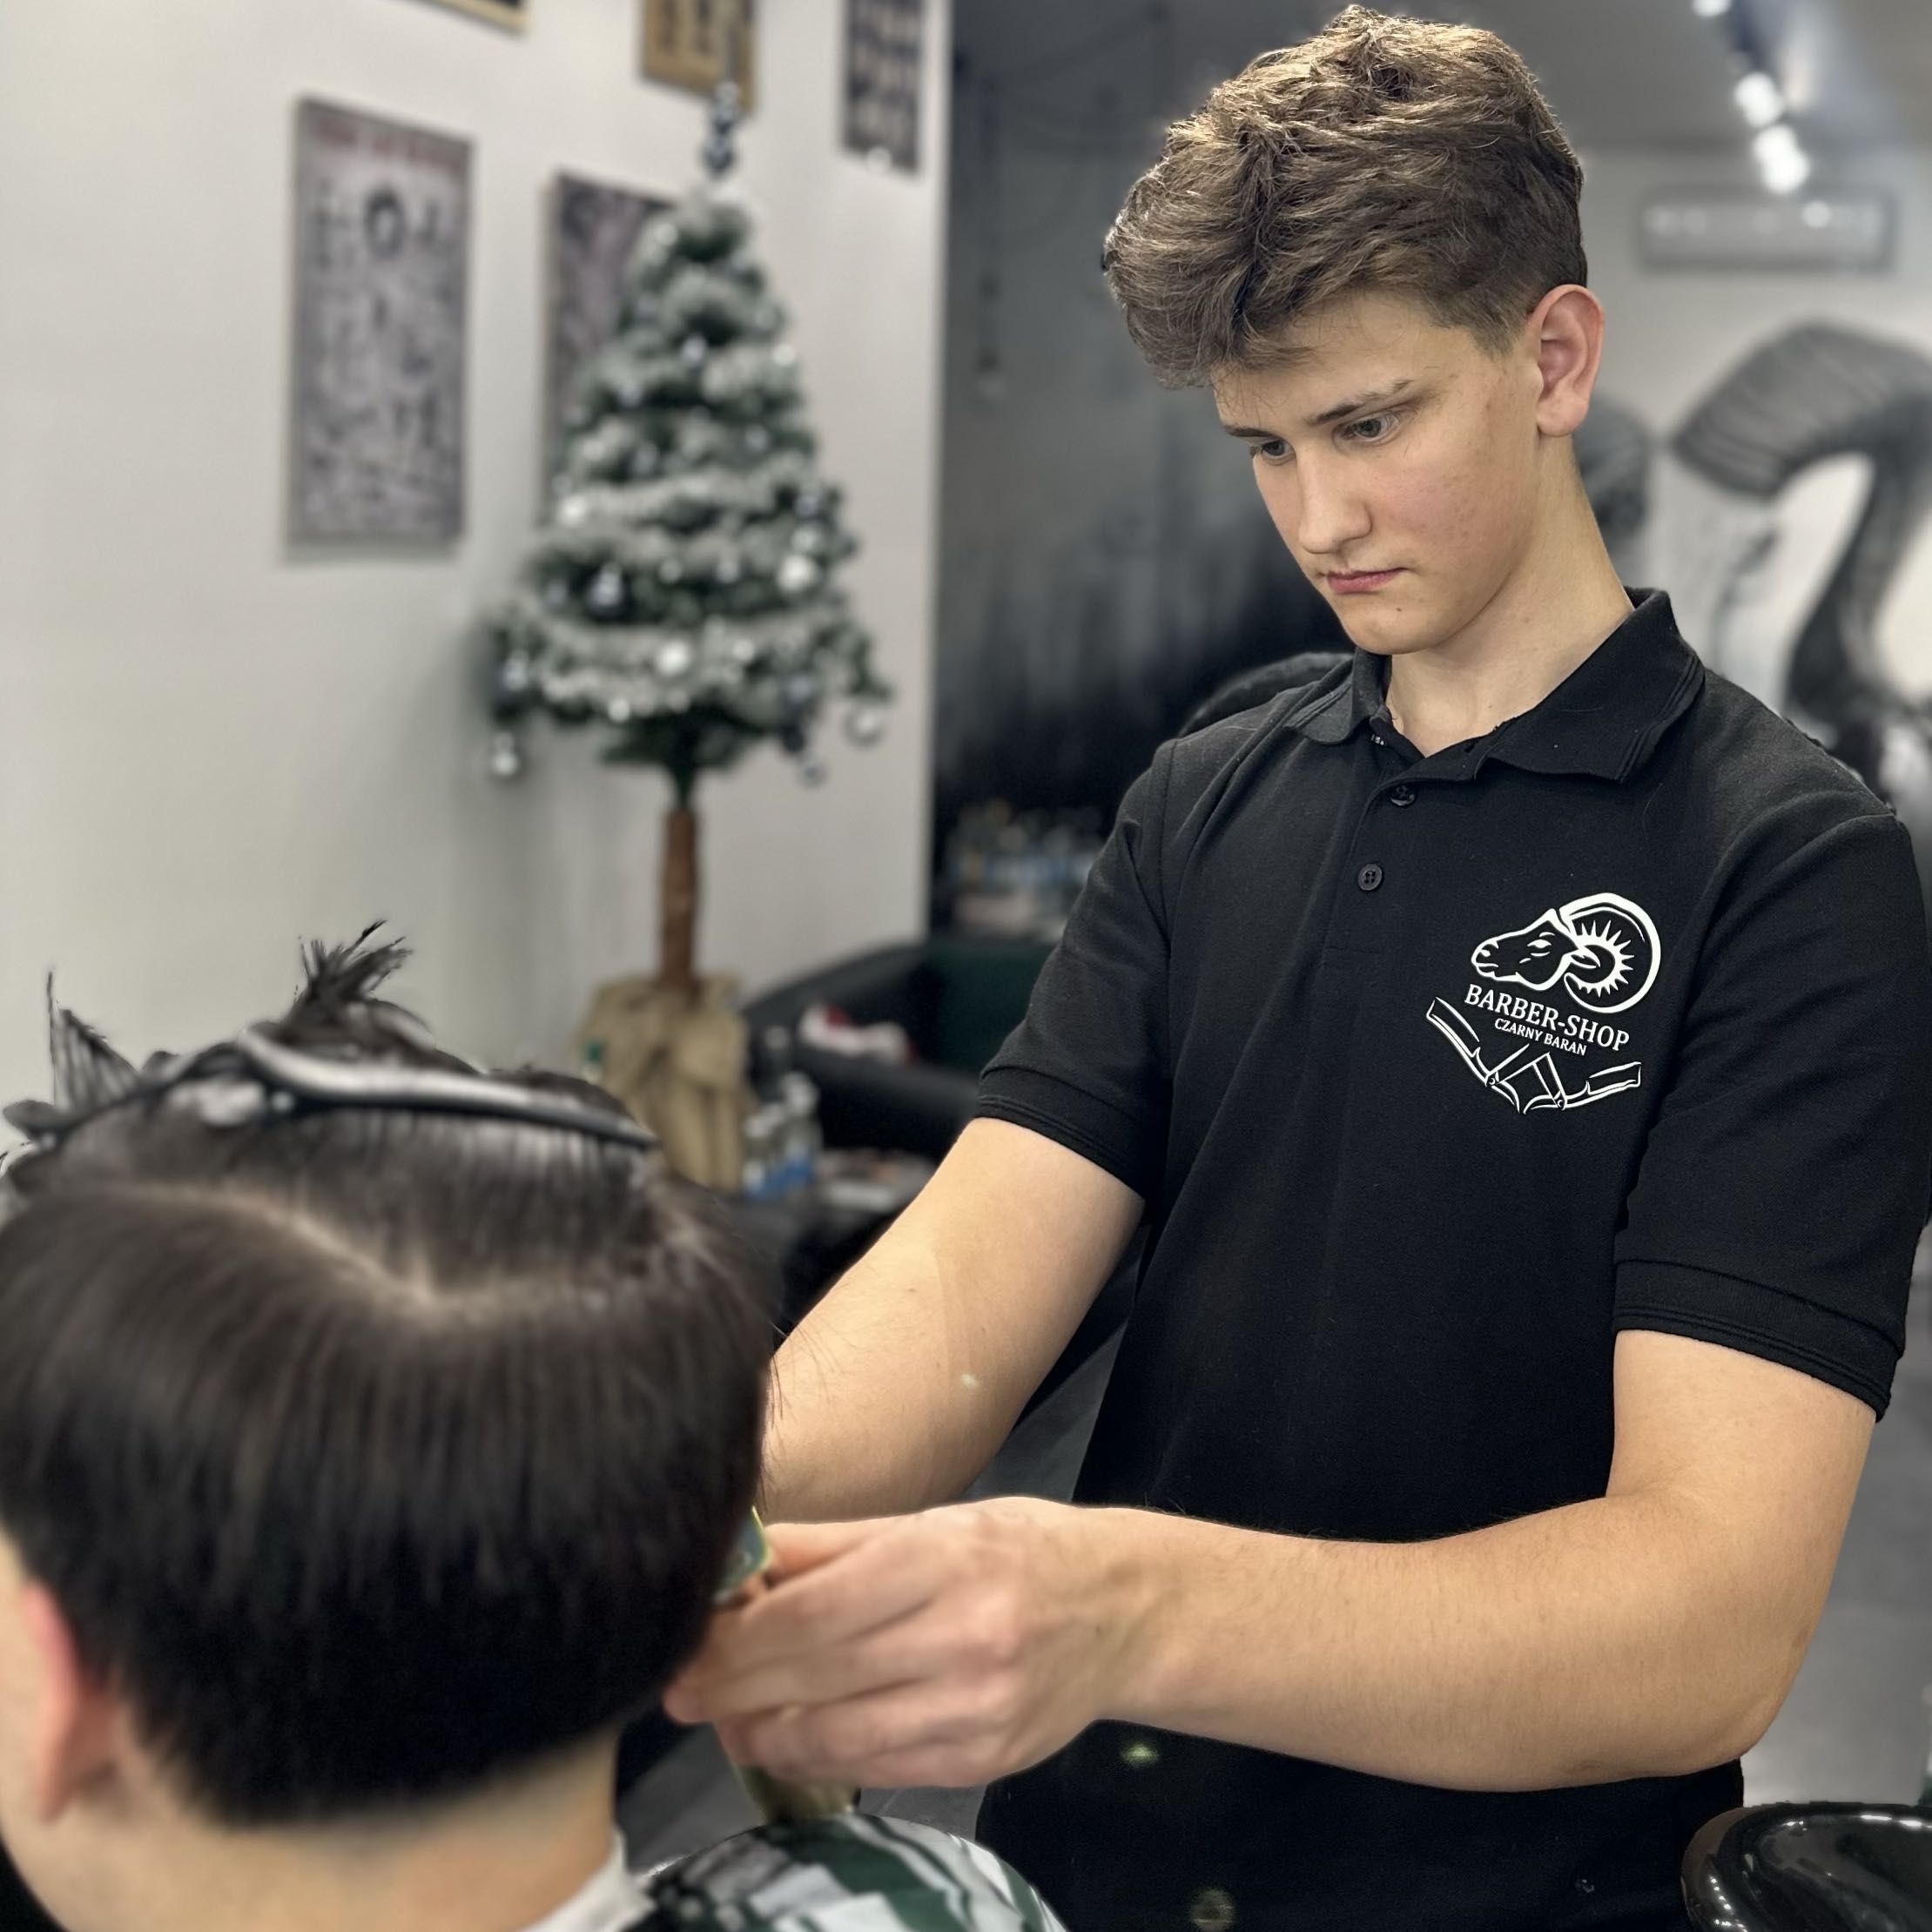 Piotrek - Czarny Baran BarberShop